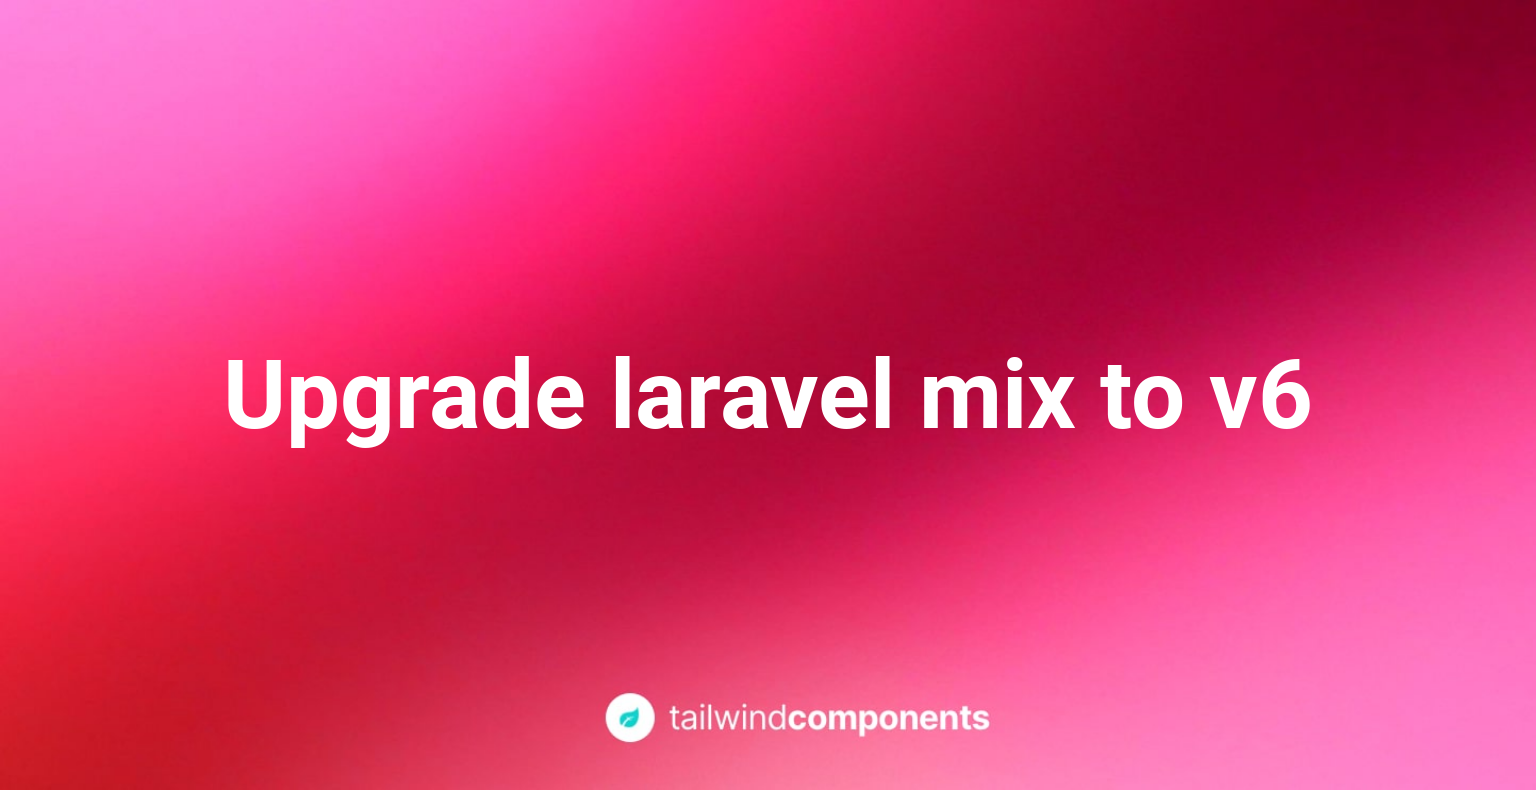 Upgrade laravel mix to v6 Image